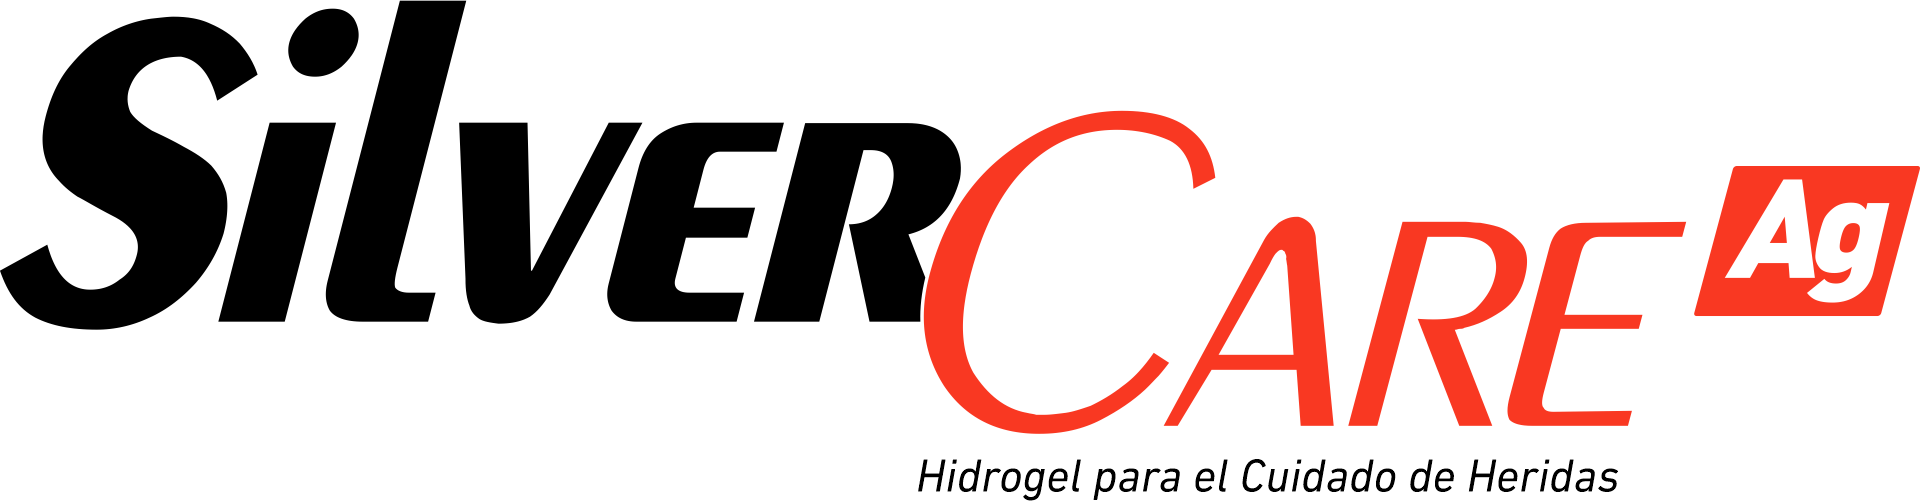 Logotipo - Silver Care - Negro y Rojo